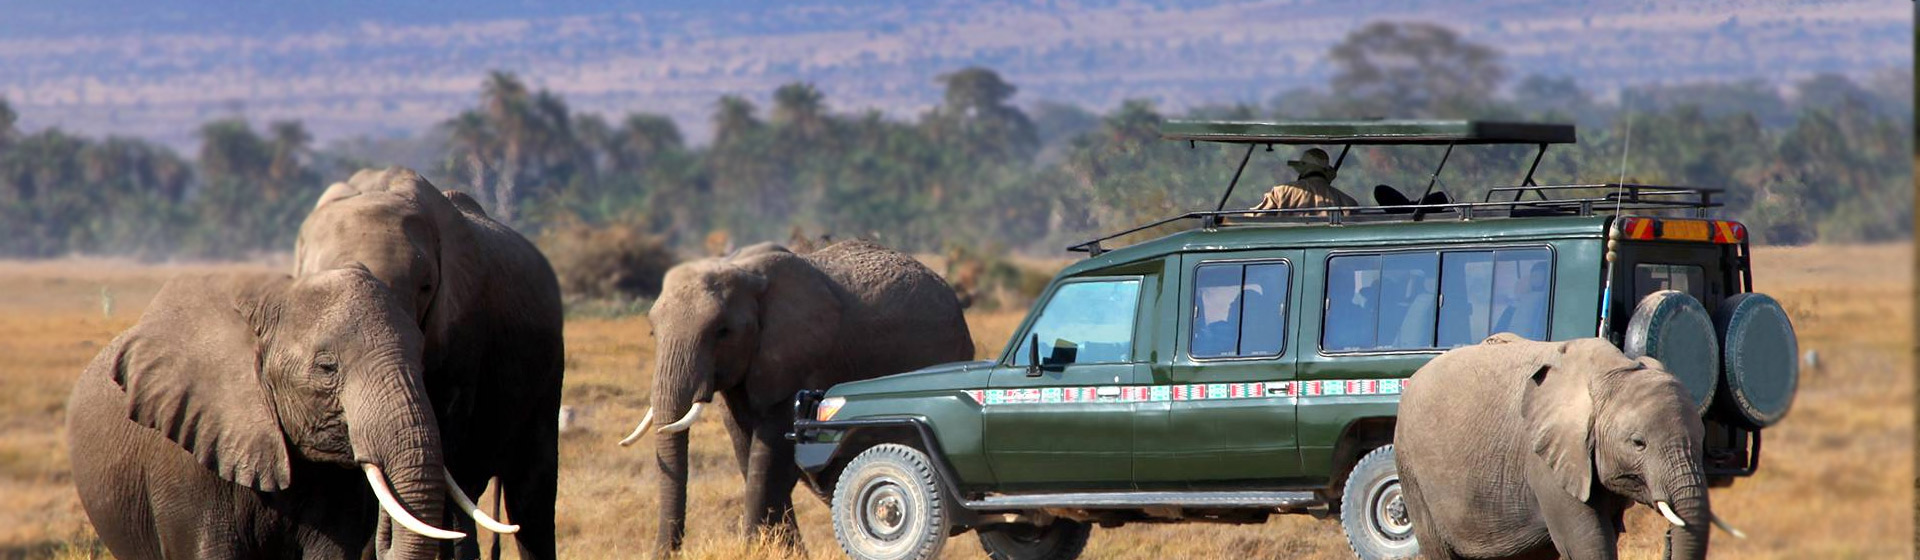 14 Days Kenya Luxury Safaris